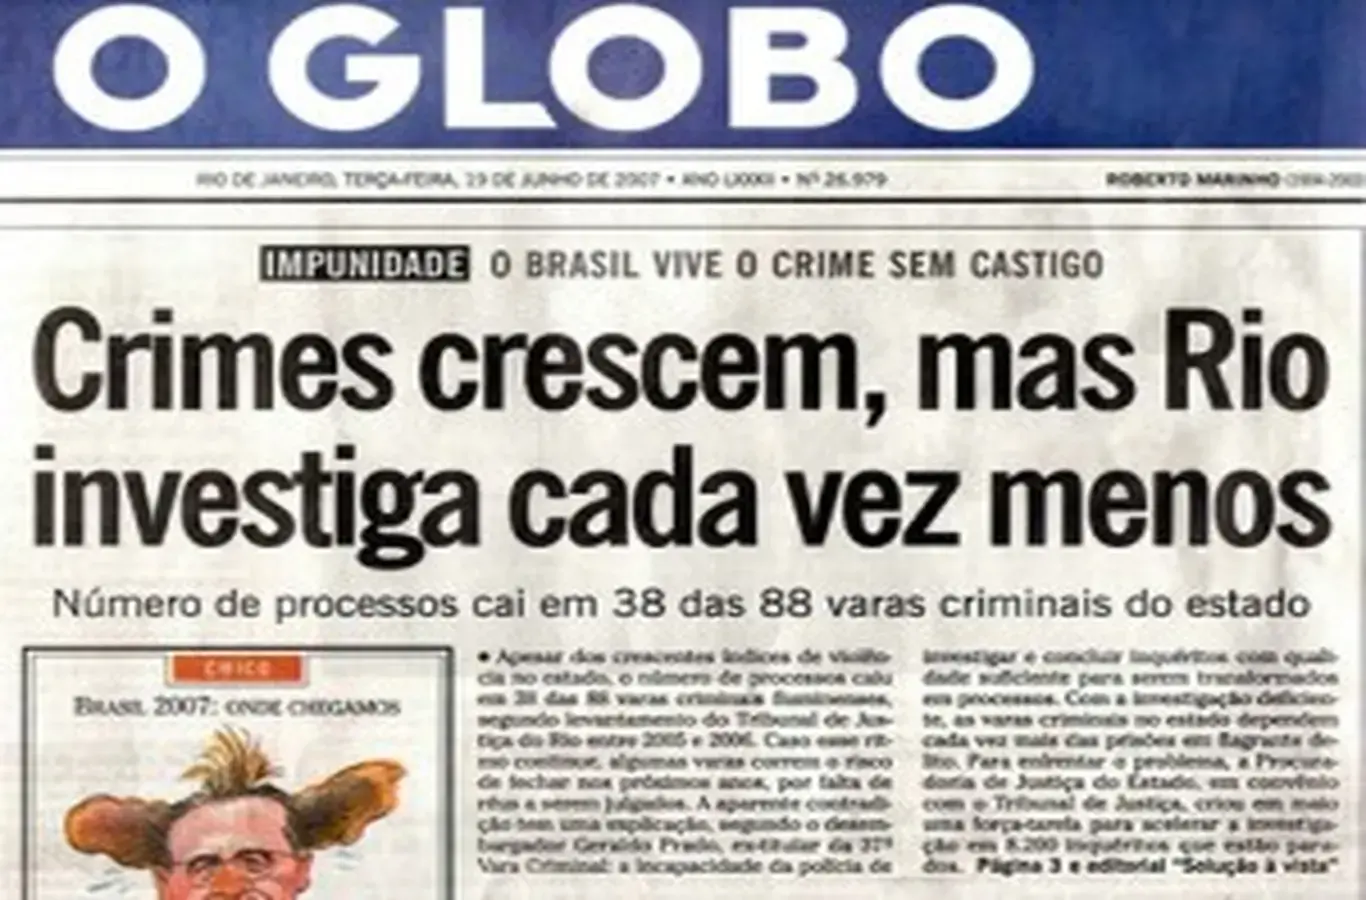 capa do jornal o globo com exemplo de conjunção